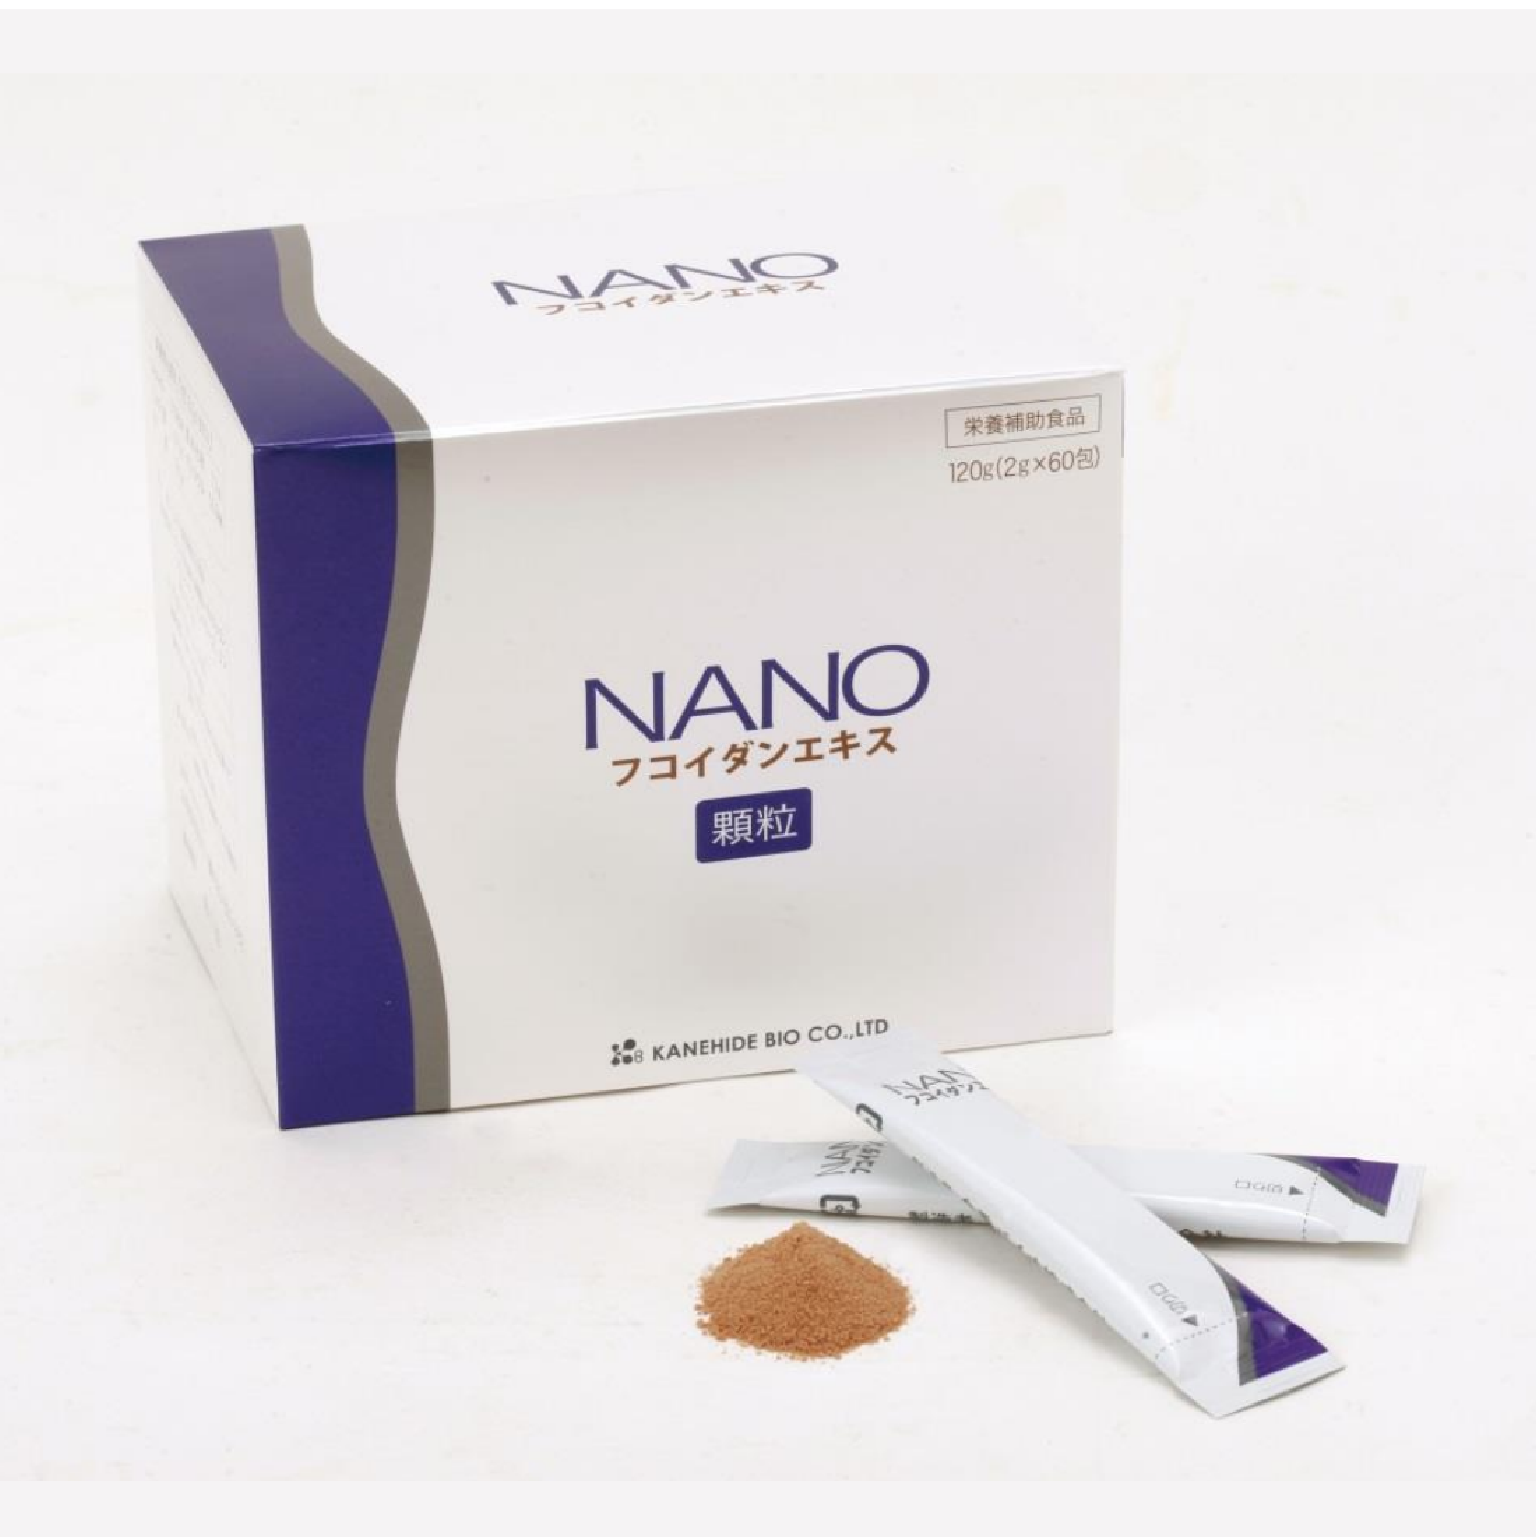 NANO (ナノ) フコイダンエキス 120g (2g×60包) - 3箱セット - 日本健康